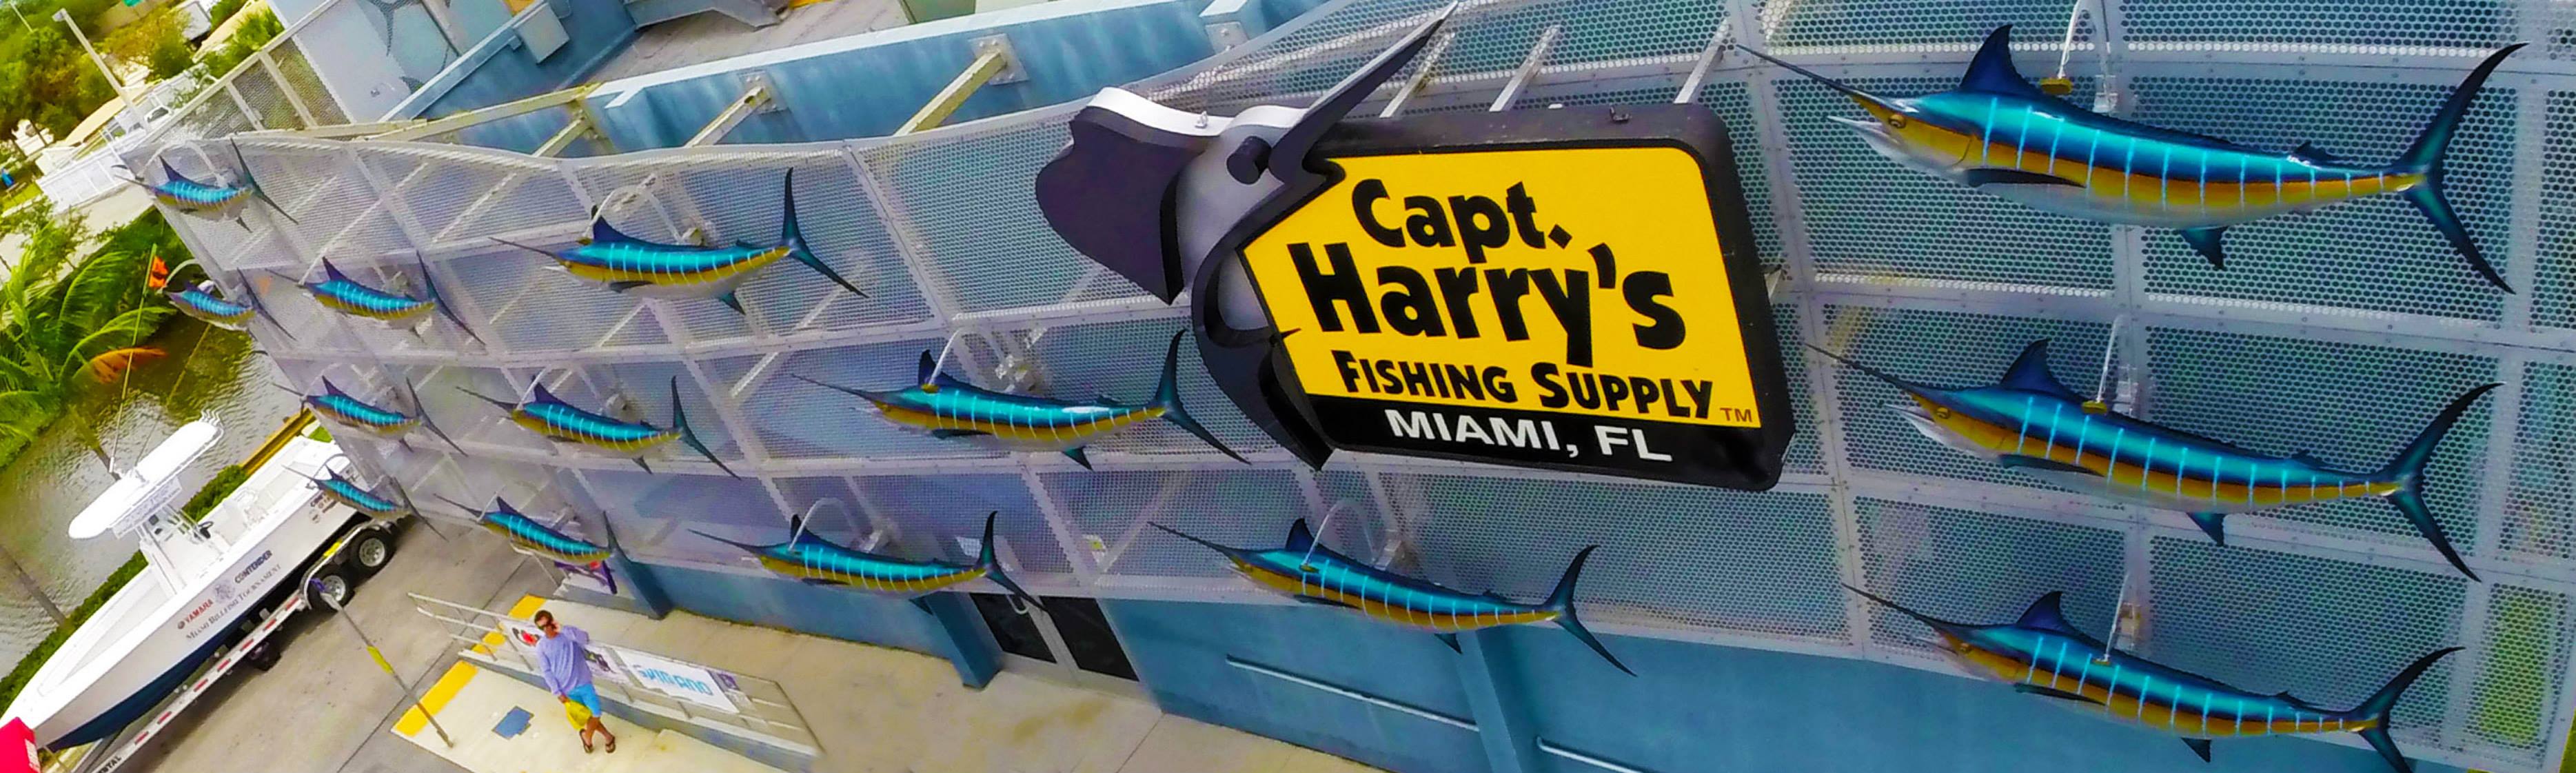 Falcon Coastal XG Casting Rods - Capt. Harry's Fishing Supply